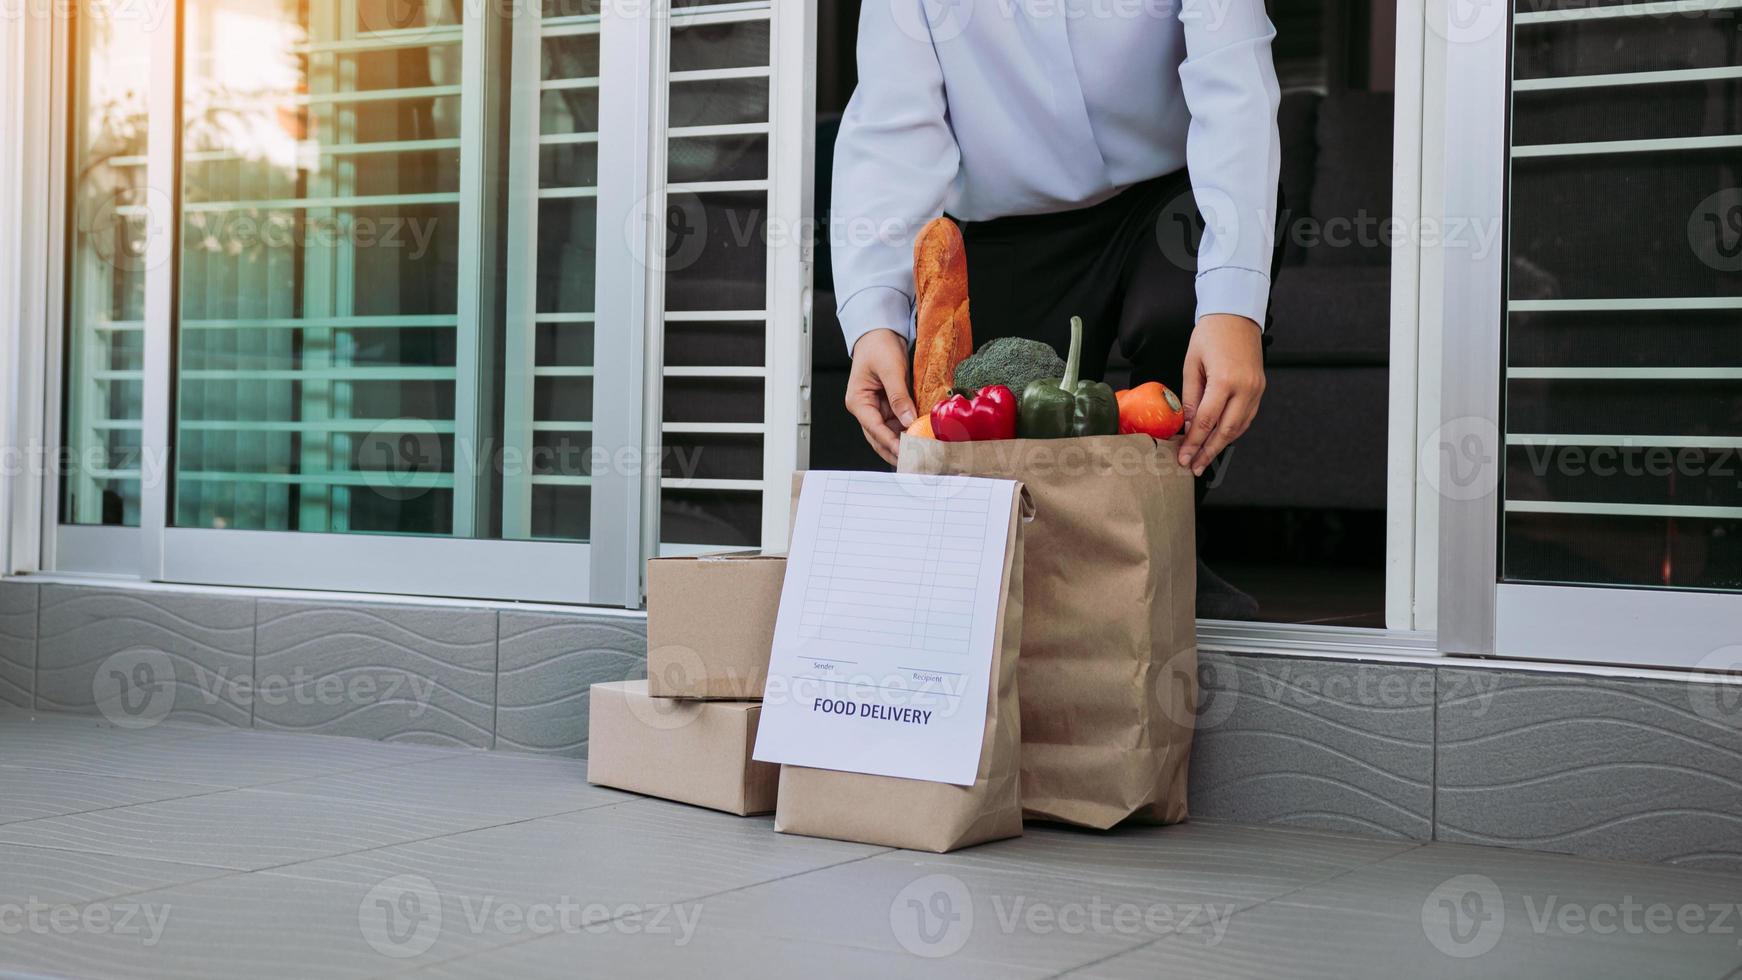 asiatisk kvinna öppnade dörren och tog påsen med mat som transportören hade beställt att lägga framför huset för att förhindra epidemin. foto